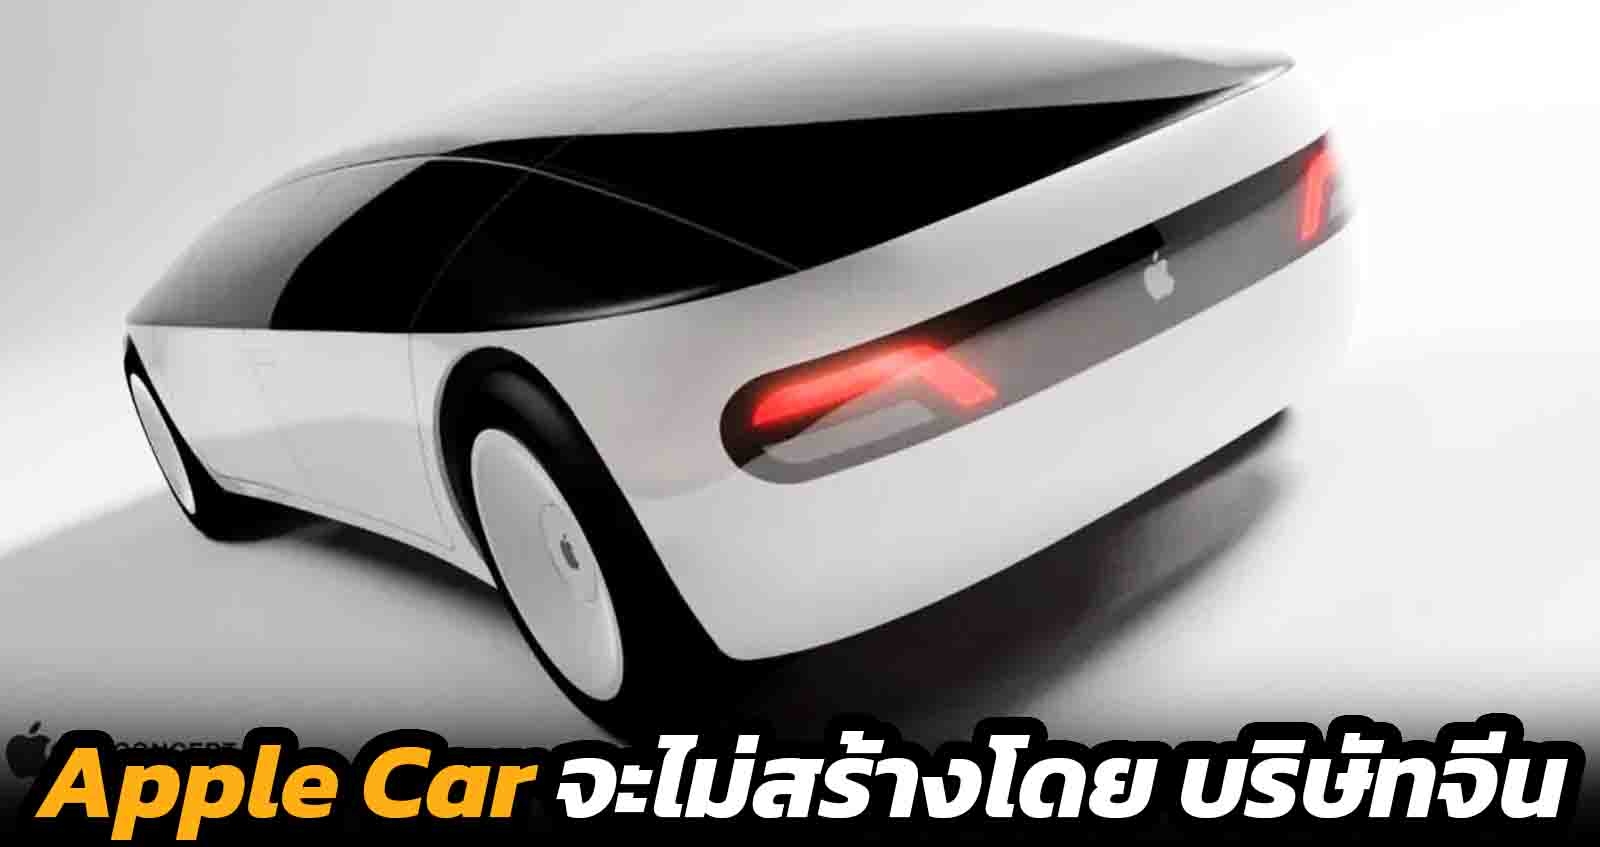 Apple Car จะไม่สร้างโดย บริษัทจีน